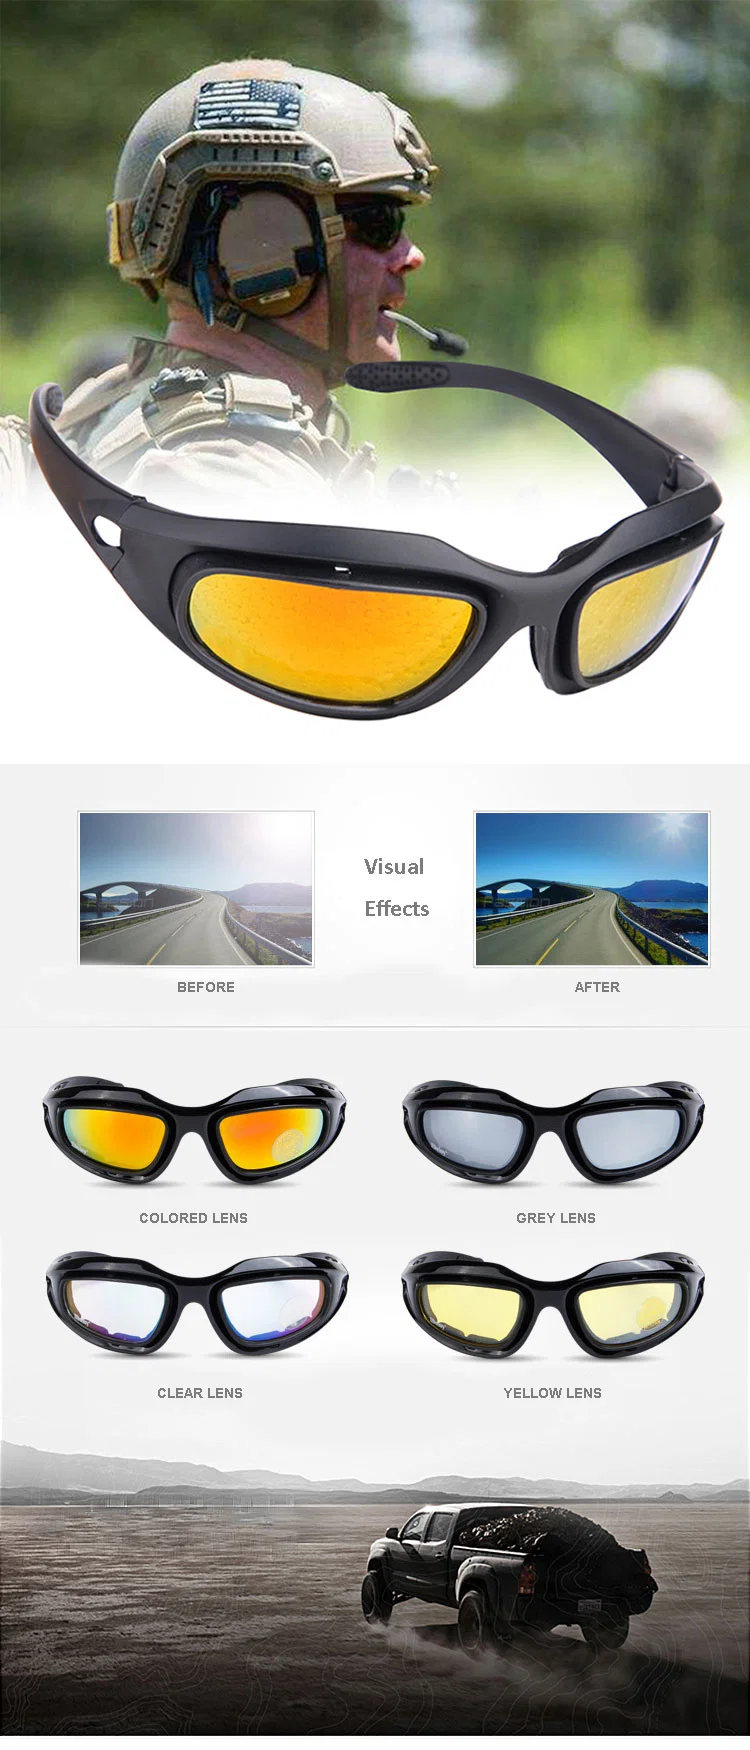 Ballistics Gafas Tactical C5 Goggles Wholesale Custom Tactical Ballistic Goggles Eyeglasses Changeable Lens